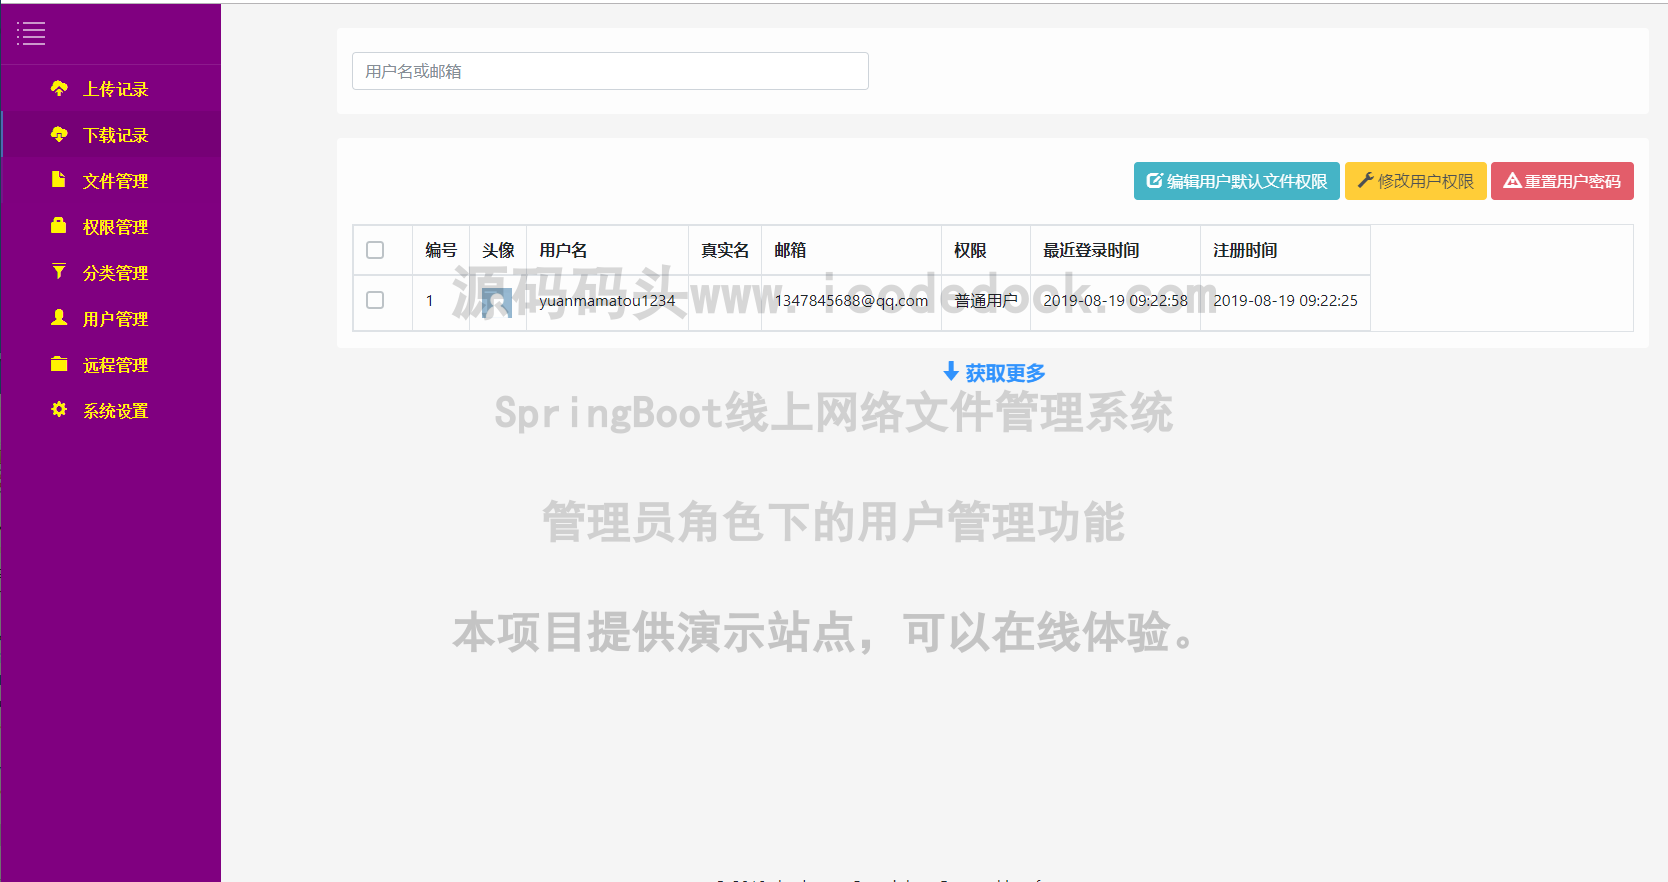 源码码头-SpringBoot线上网络文件管理系统-管理员角色-用户管理